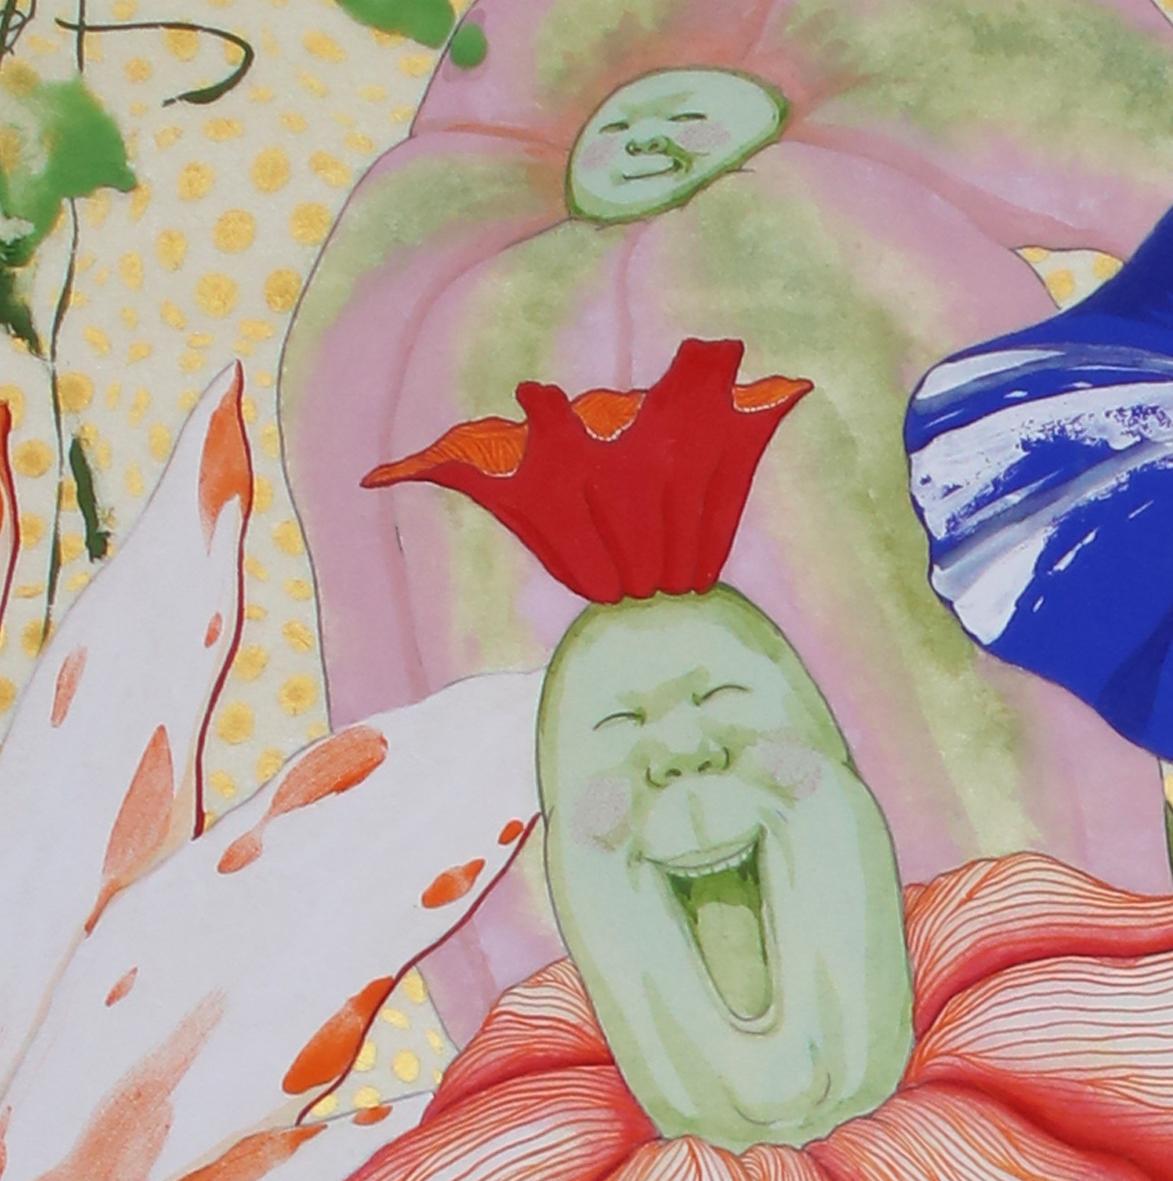 Vollständiger Titel: El Origen del Deseo - La Motivación Desbordante

Mari Ito wurde 1980 in Tokio, Japan, geboren. Sie studierte Nihonga, japanische Malerei, die mit traditionellen Praktiken, Techniken und Materialien hergestellt wird. Im Jahr 2006